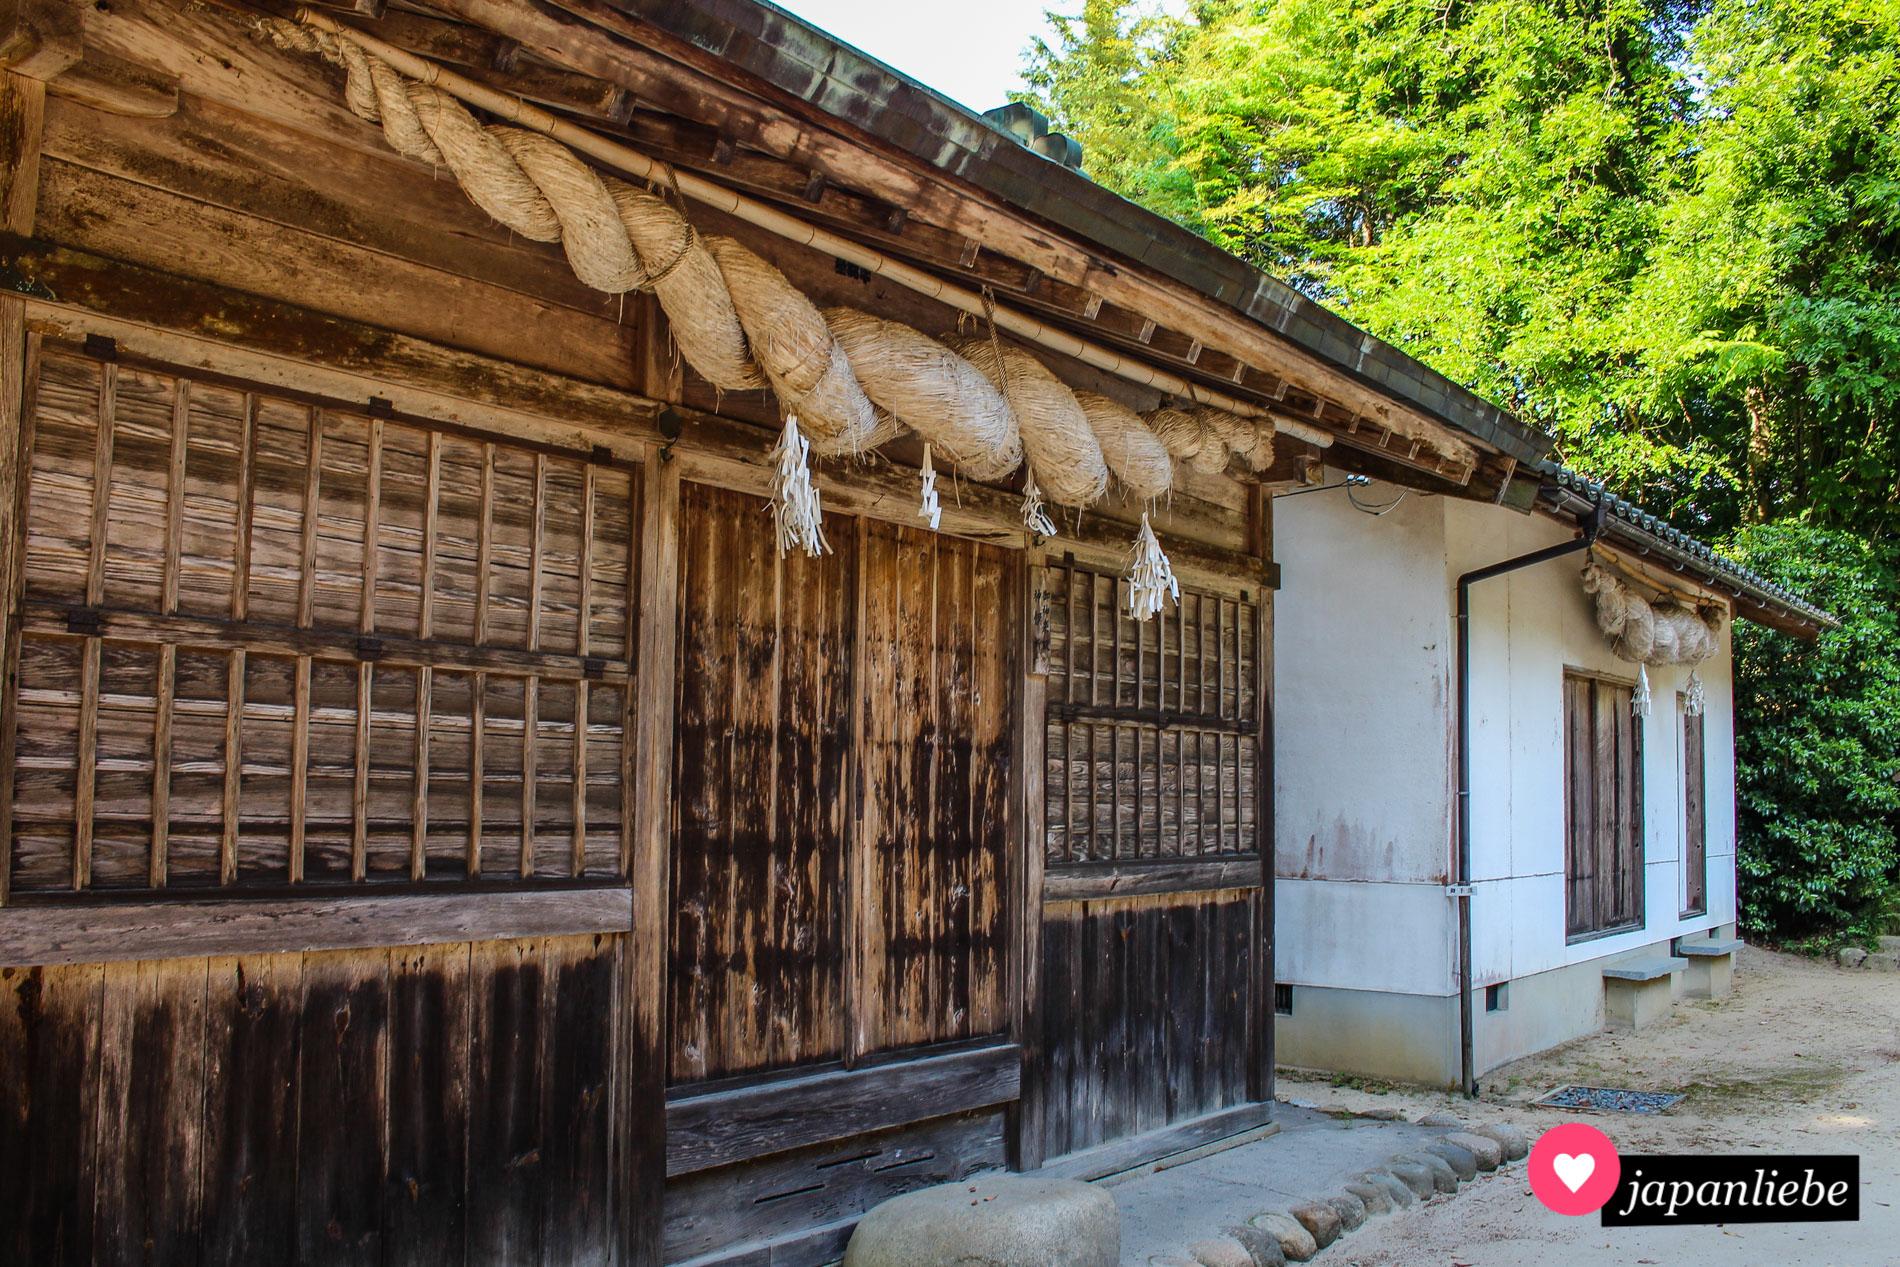 Die Gebäude des des Tamatsukuriyu-Schreins sind rundum mit dicken shimenawa-Reisstrohseilen geschmückt.